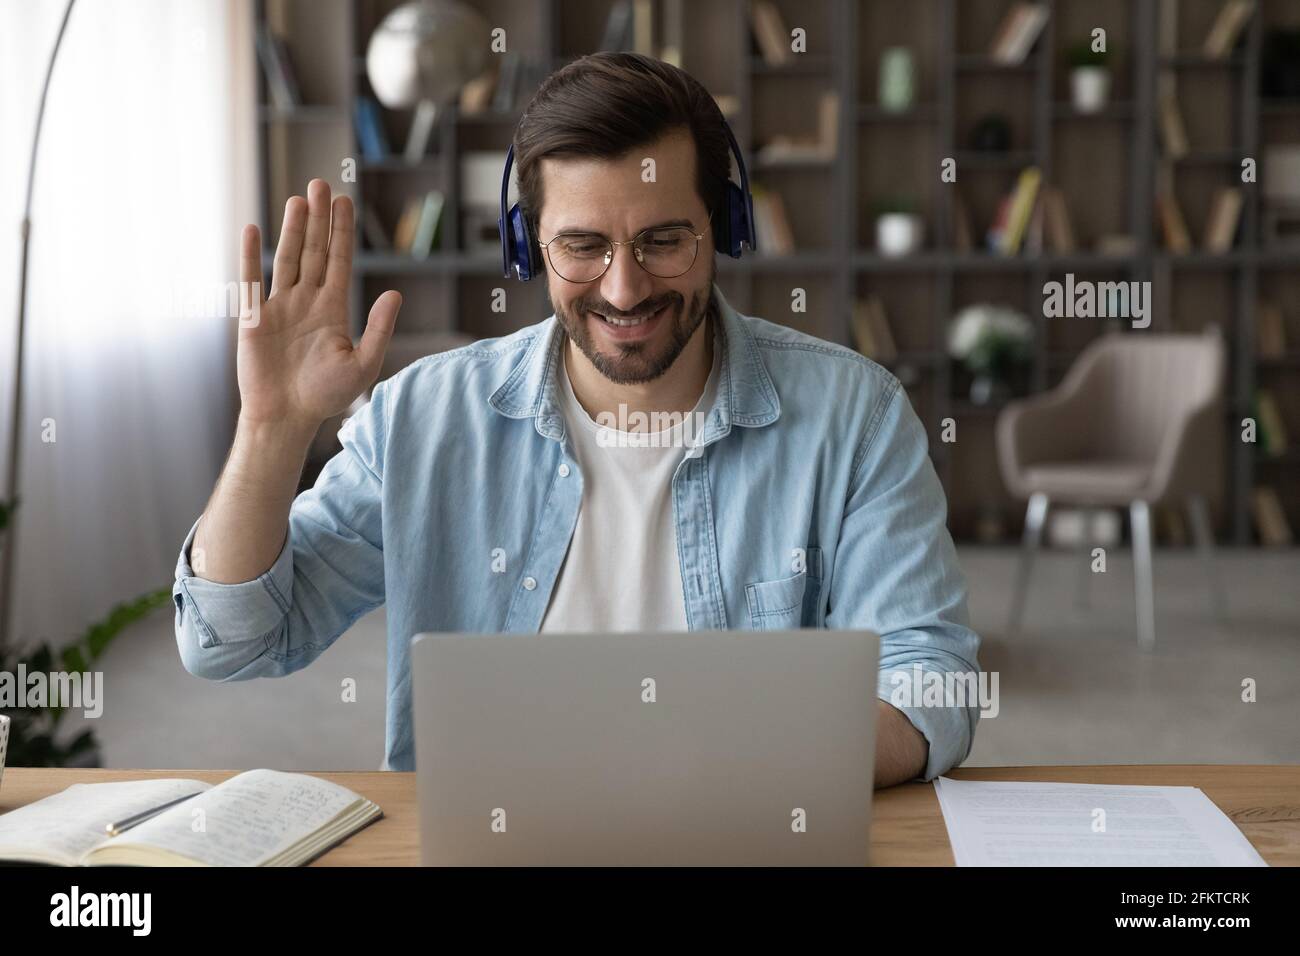 Lächelnder Mann mit Kopfhörern, der mit der Hand die Webcam anwinkt und einen Laptop benutzt Stockfoto